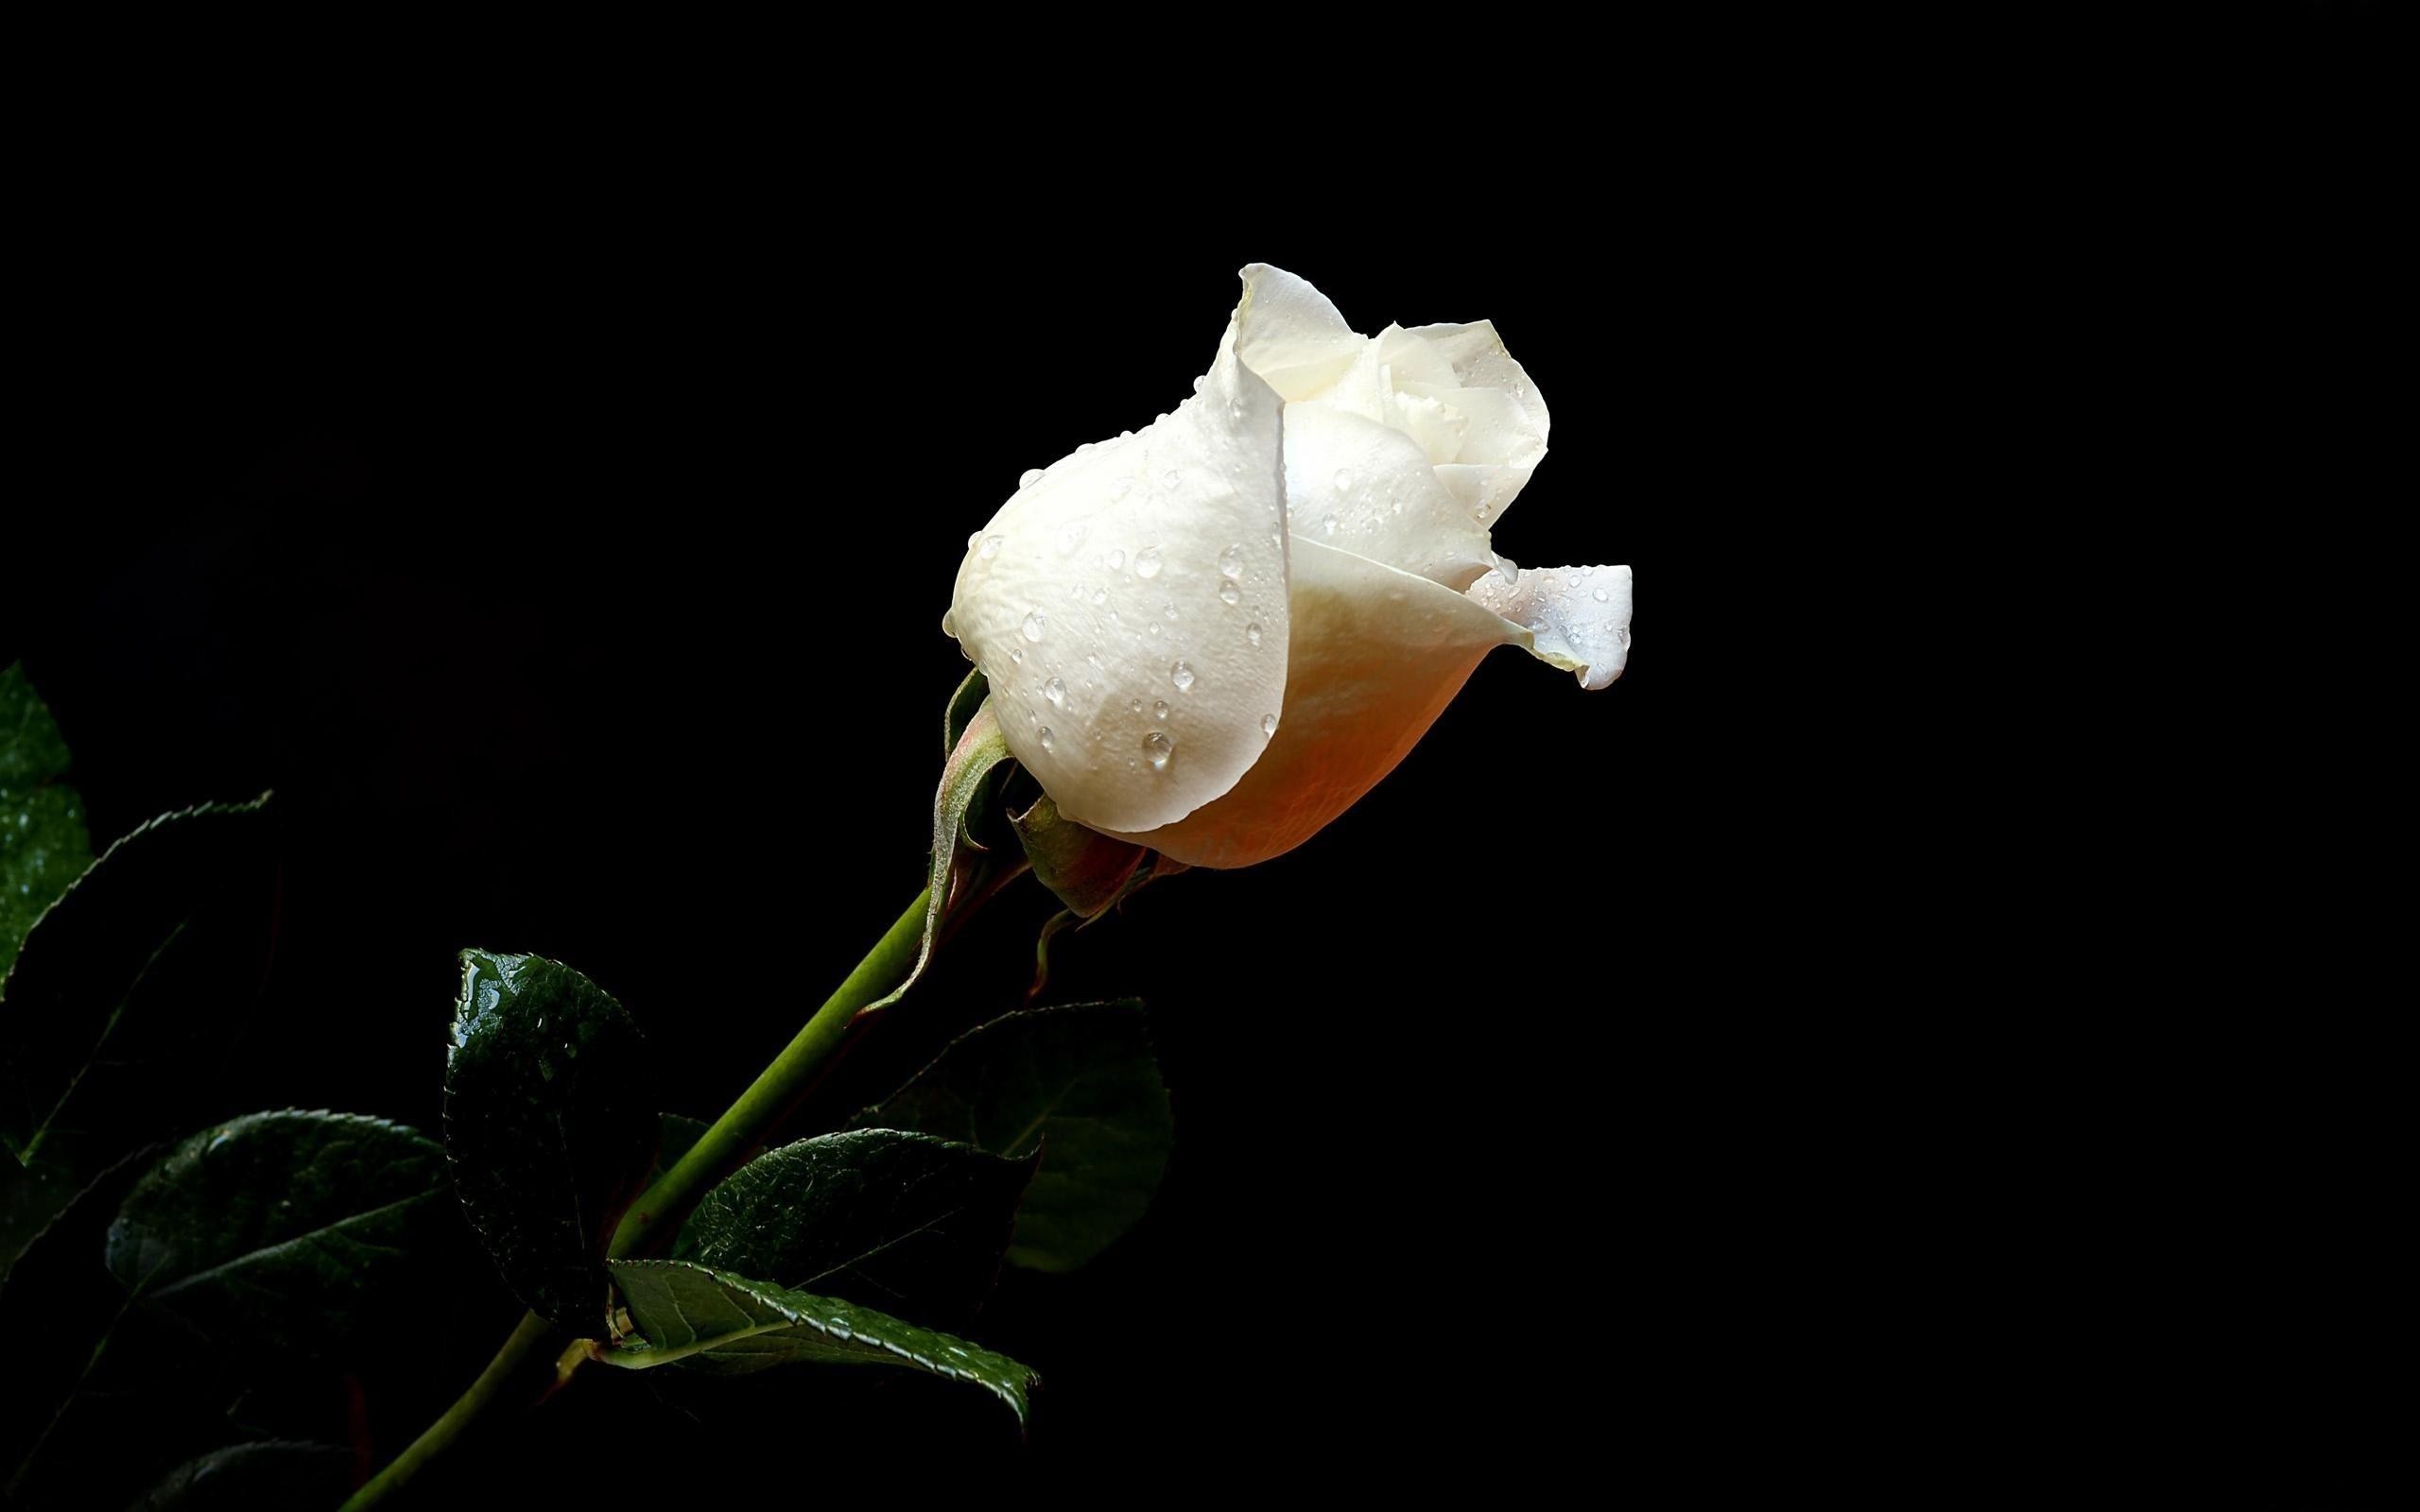 2560x1600  Wallpaper rose, flower, drops, fresh, black background